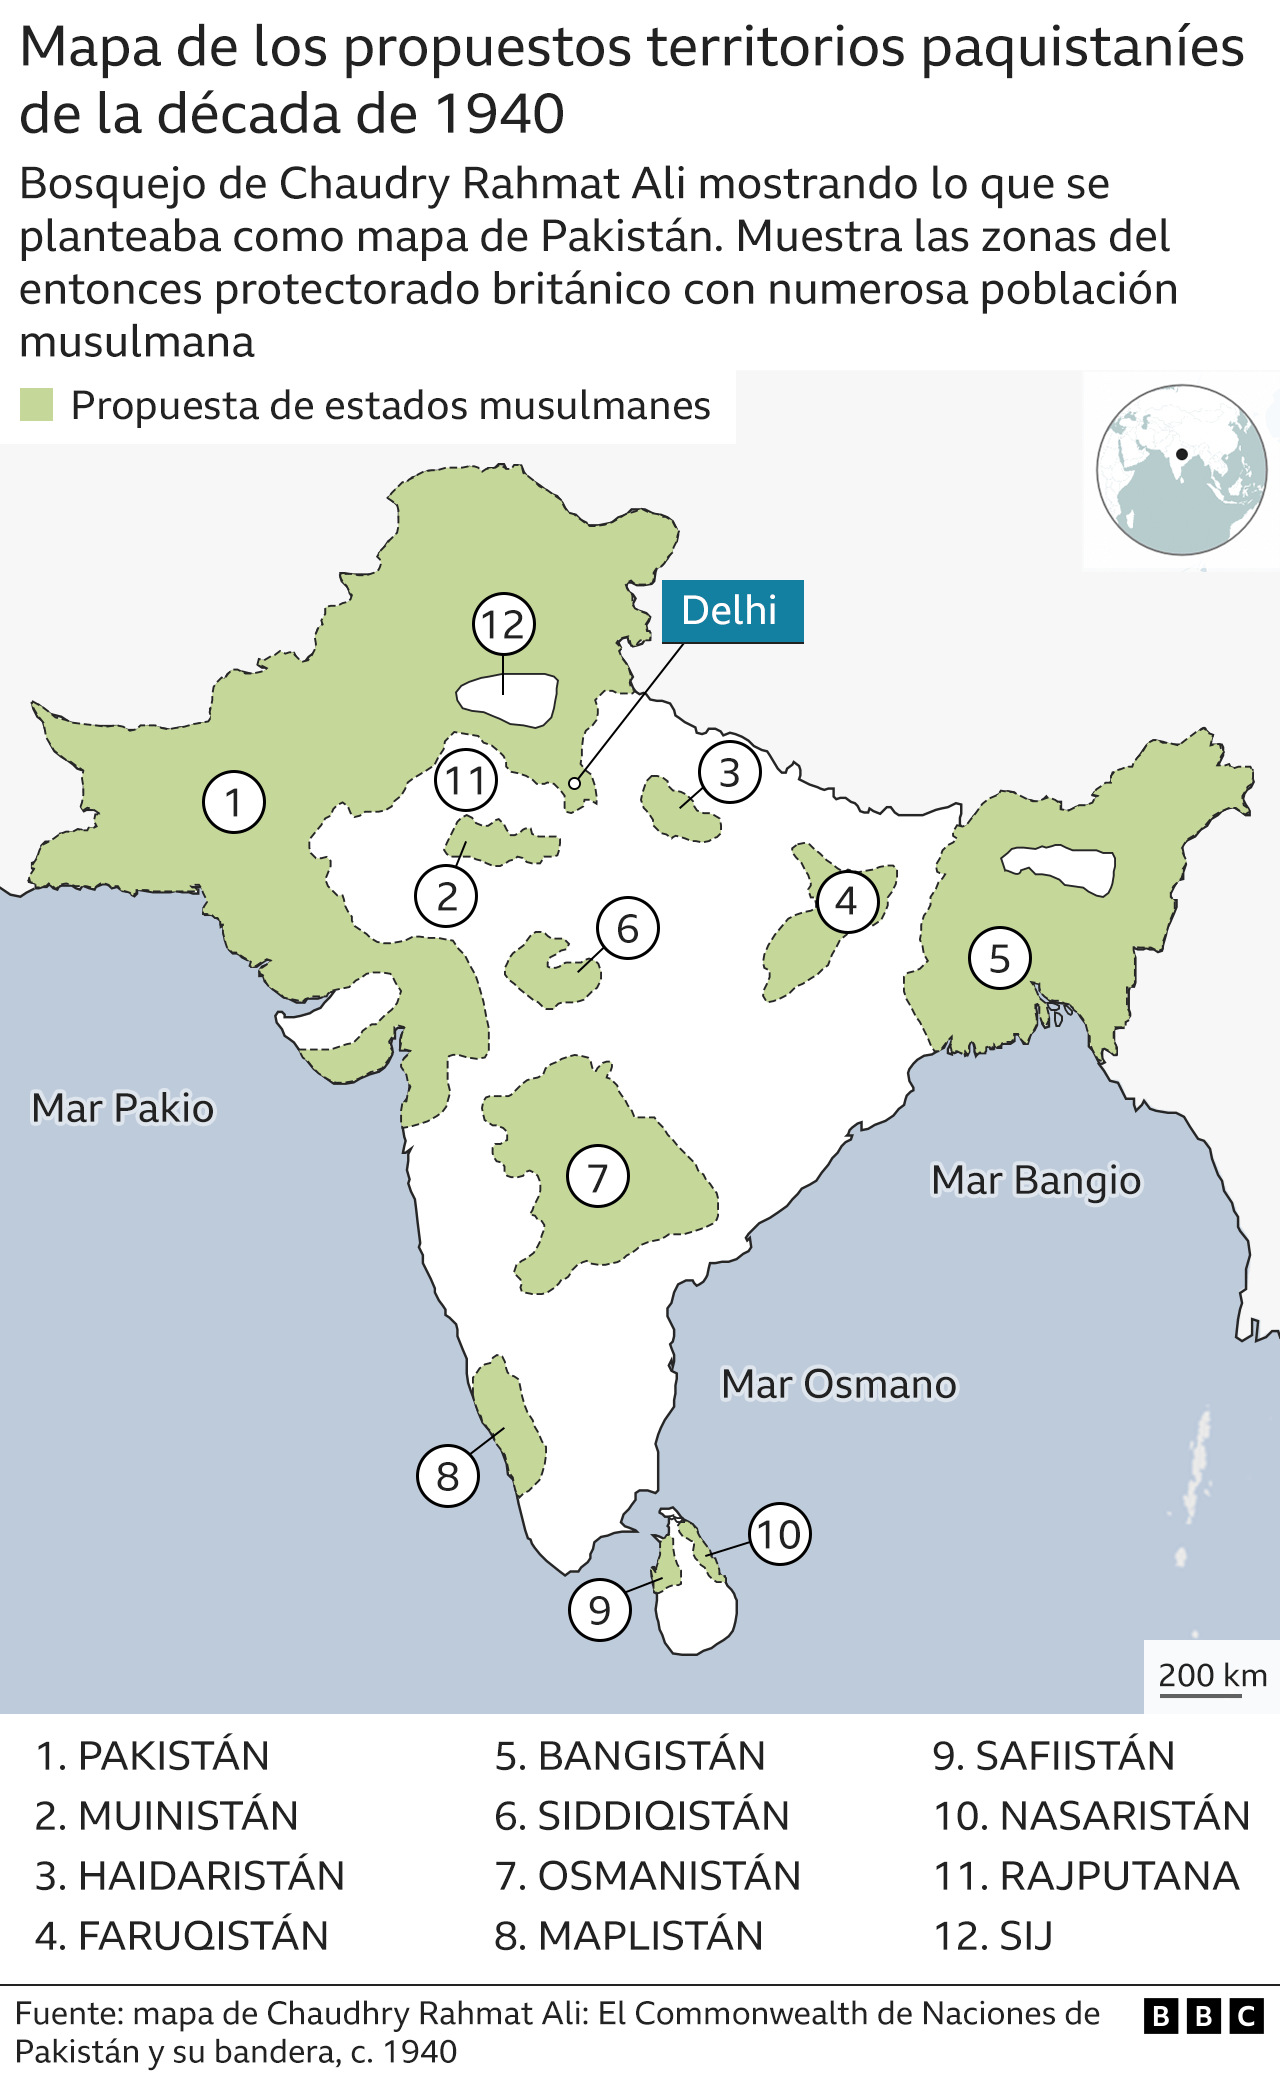 peta india pakistan